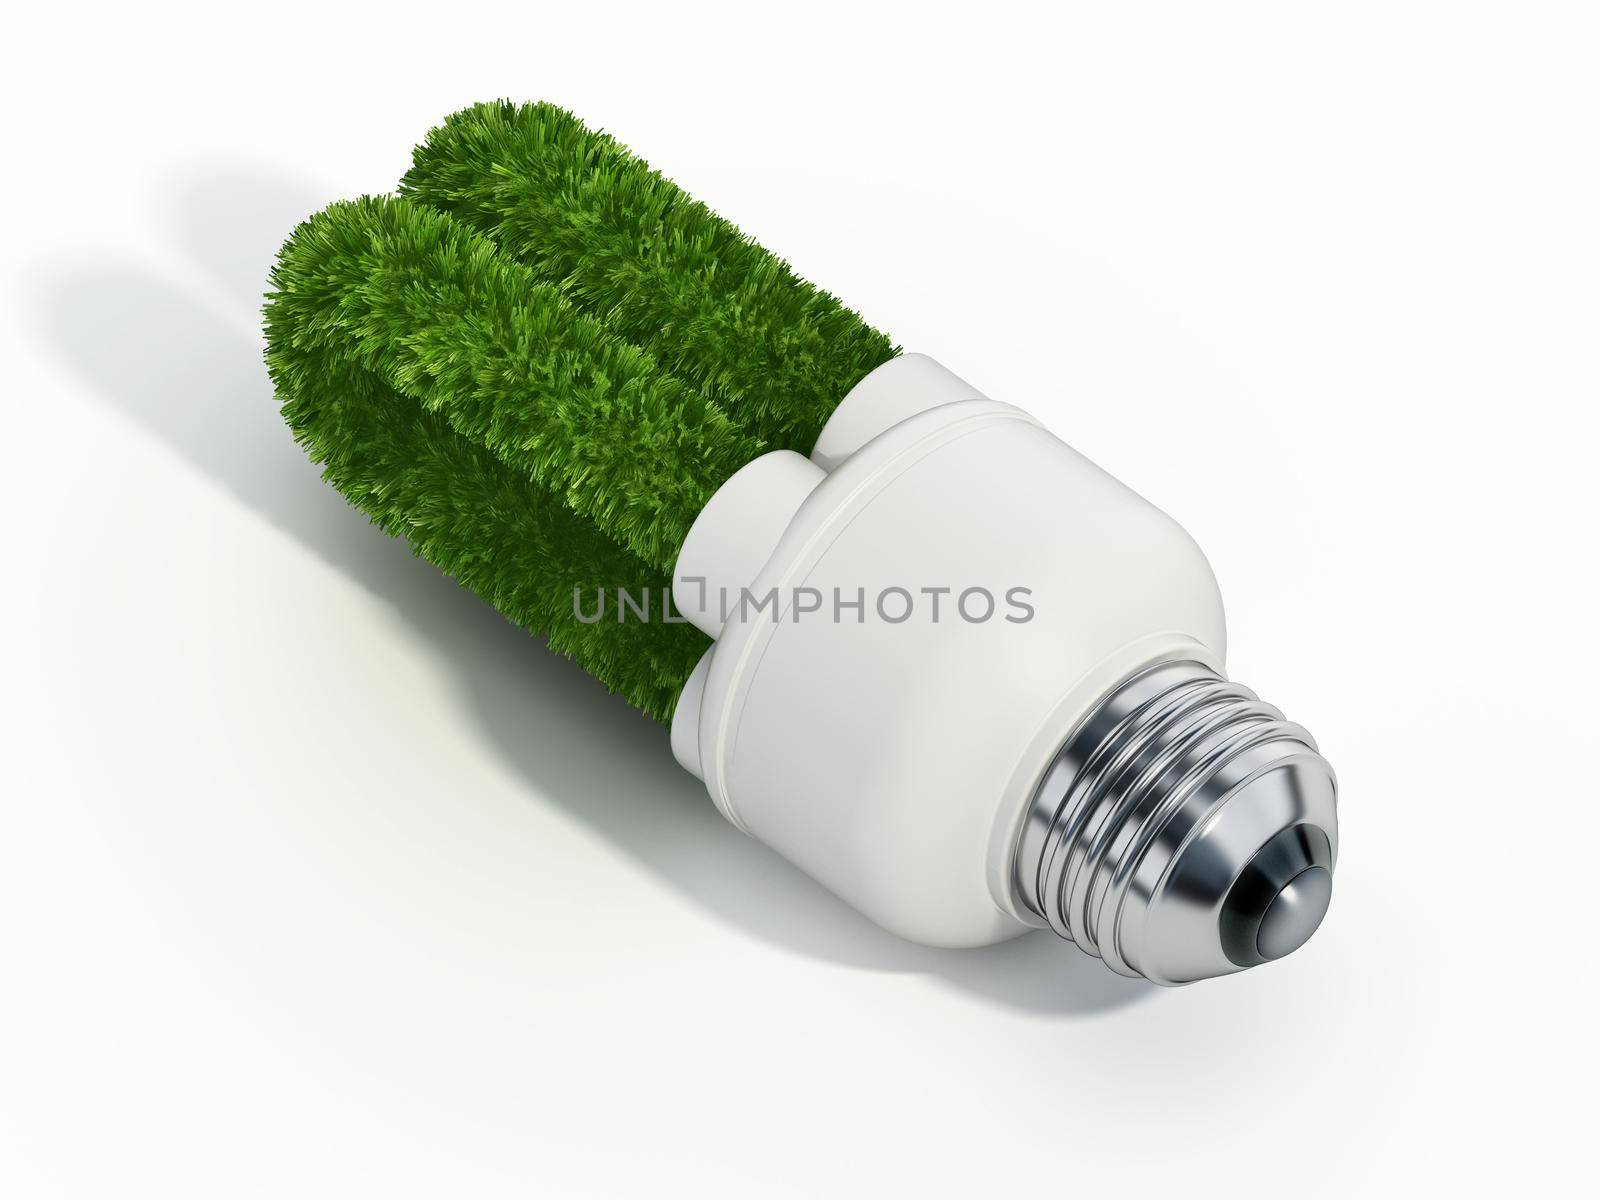 Green fluorescent light bulb isolated on white background. 3D illustration.